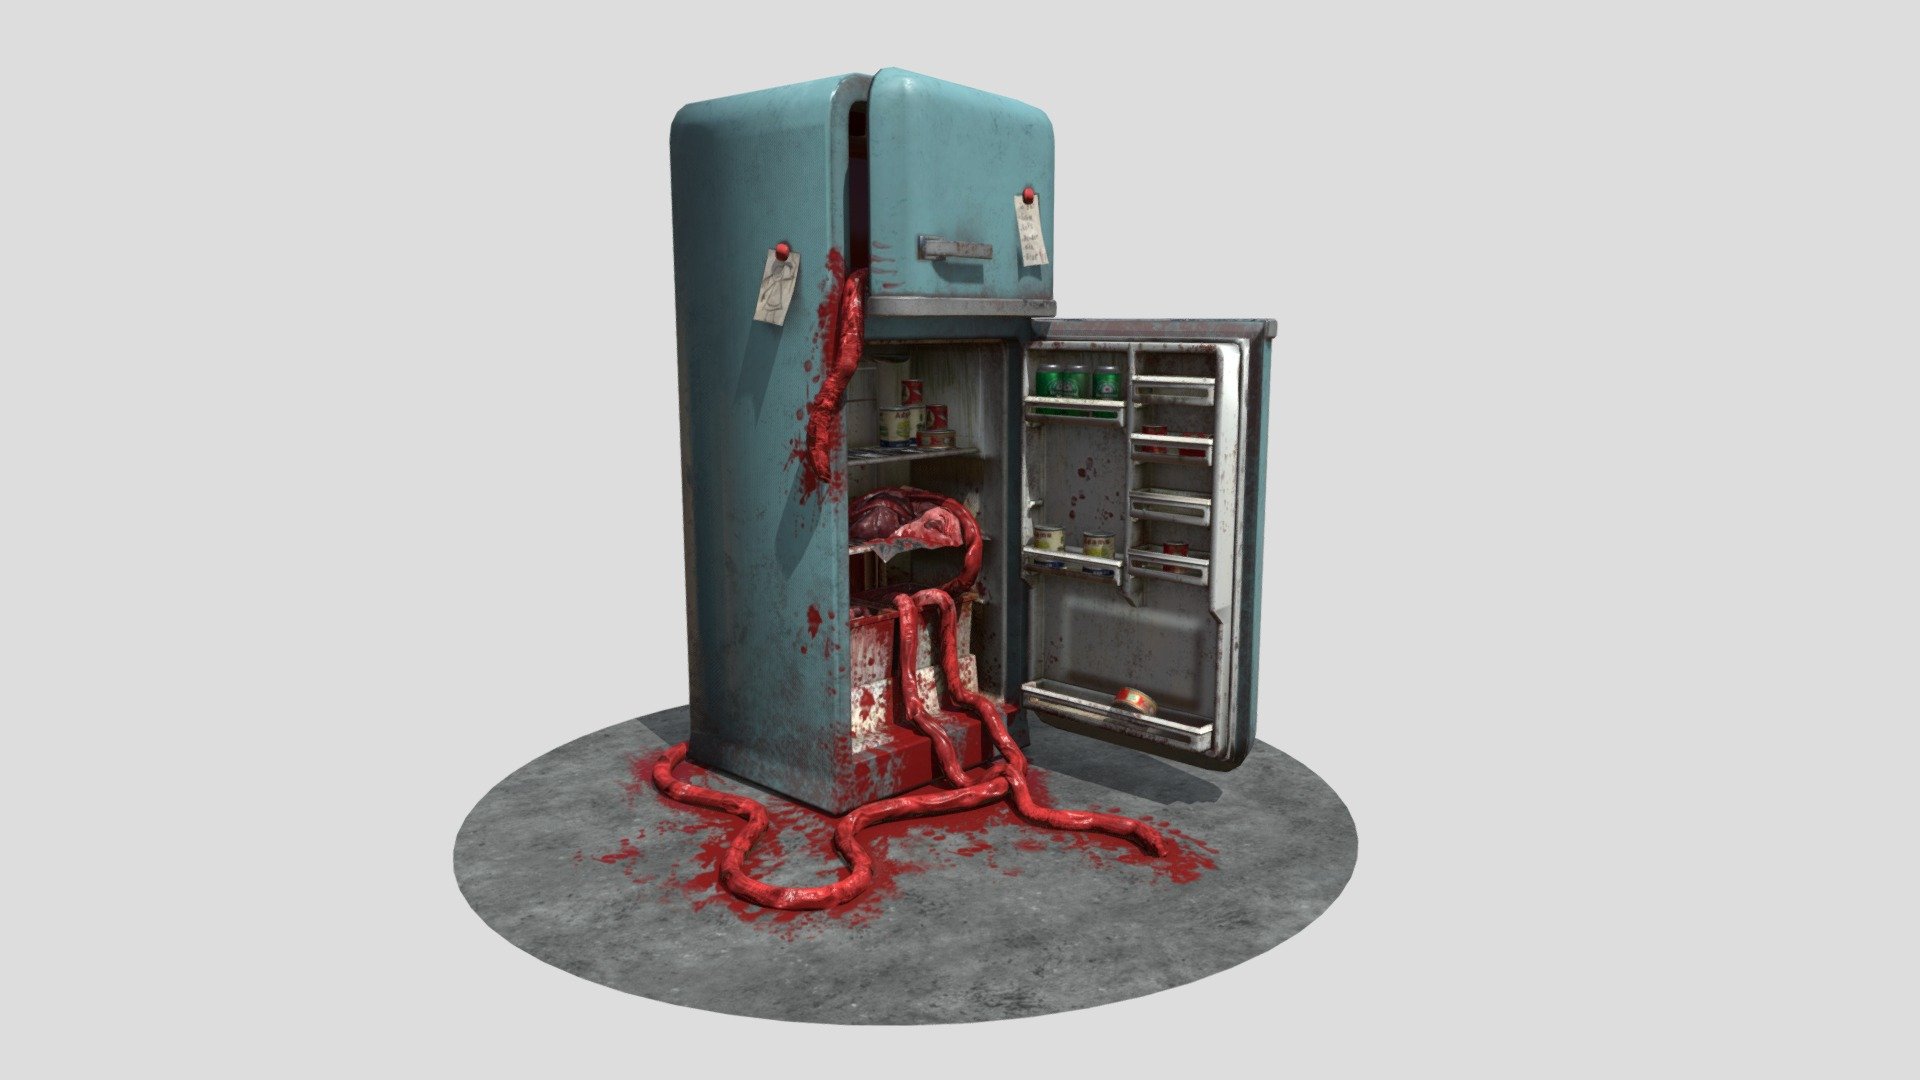 The fridge of Horror - 3D model by AlfonsArt (@ArtAlfons) 3d model